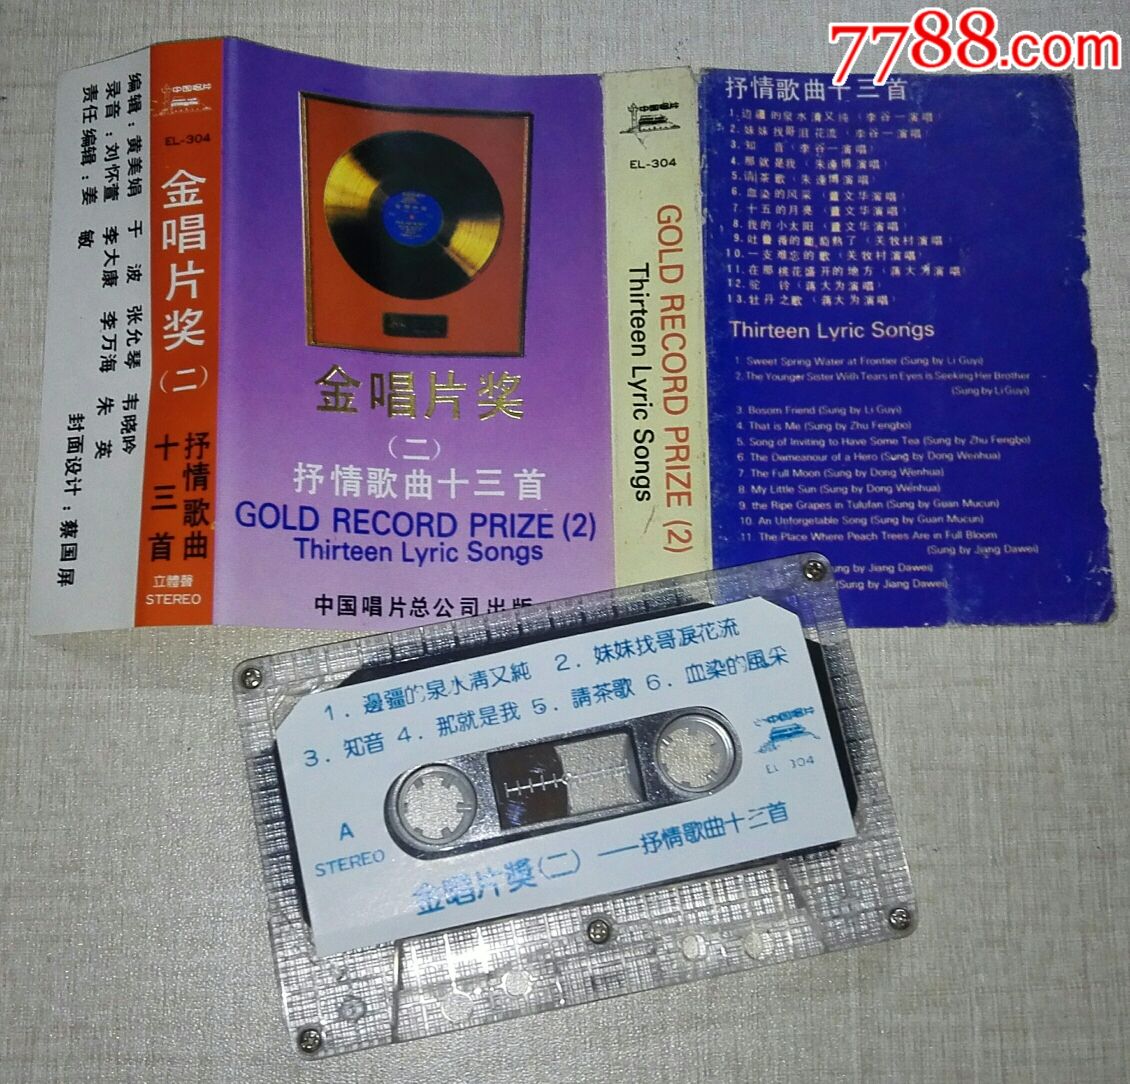 中国唱片《金唱片奖》(1_4)中唱总公司磁带